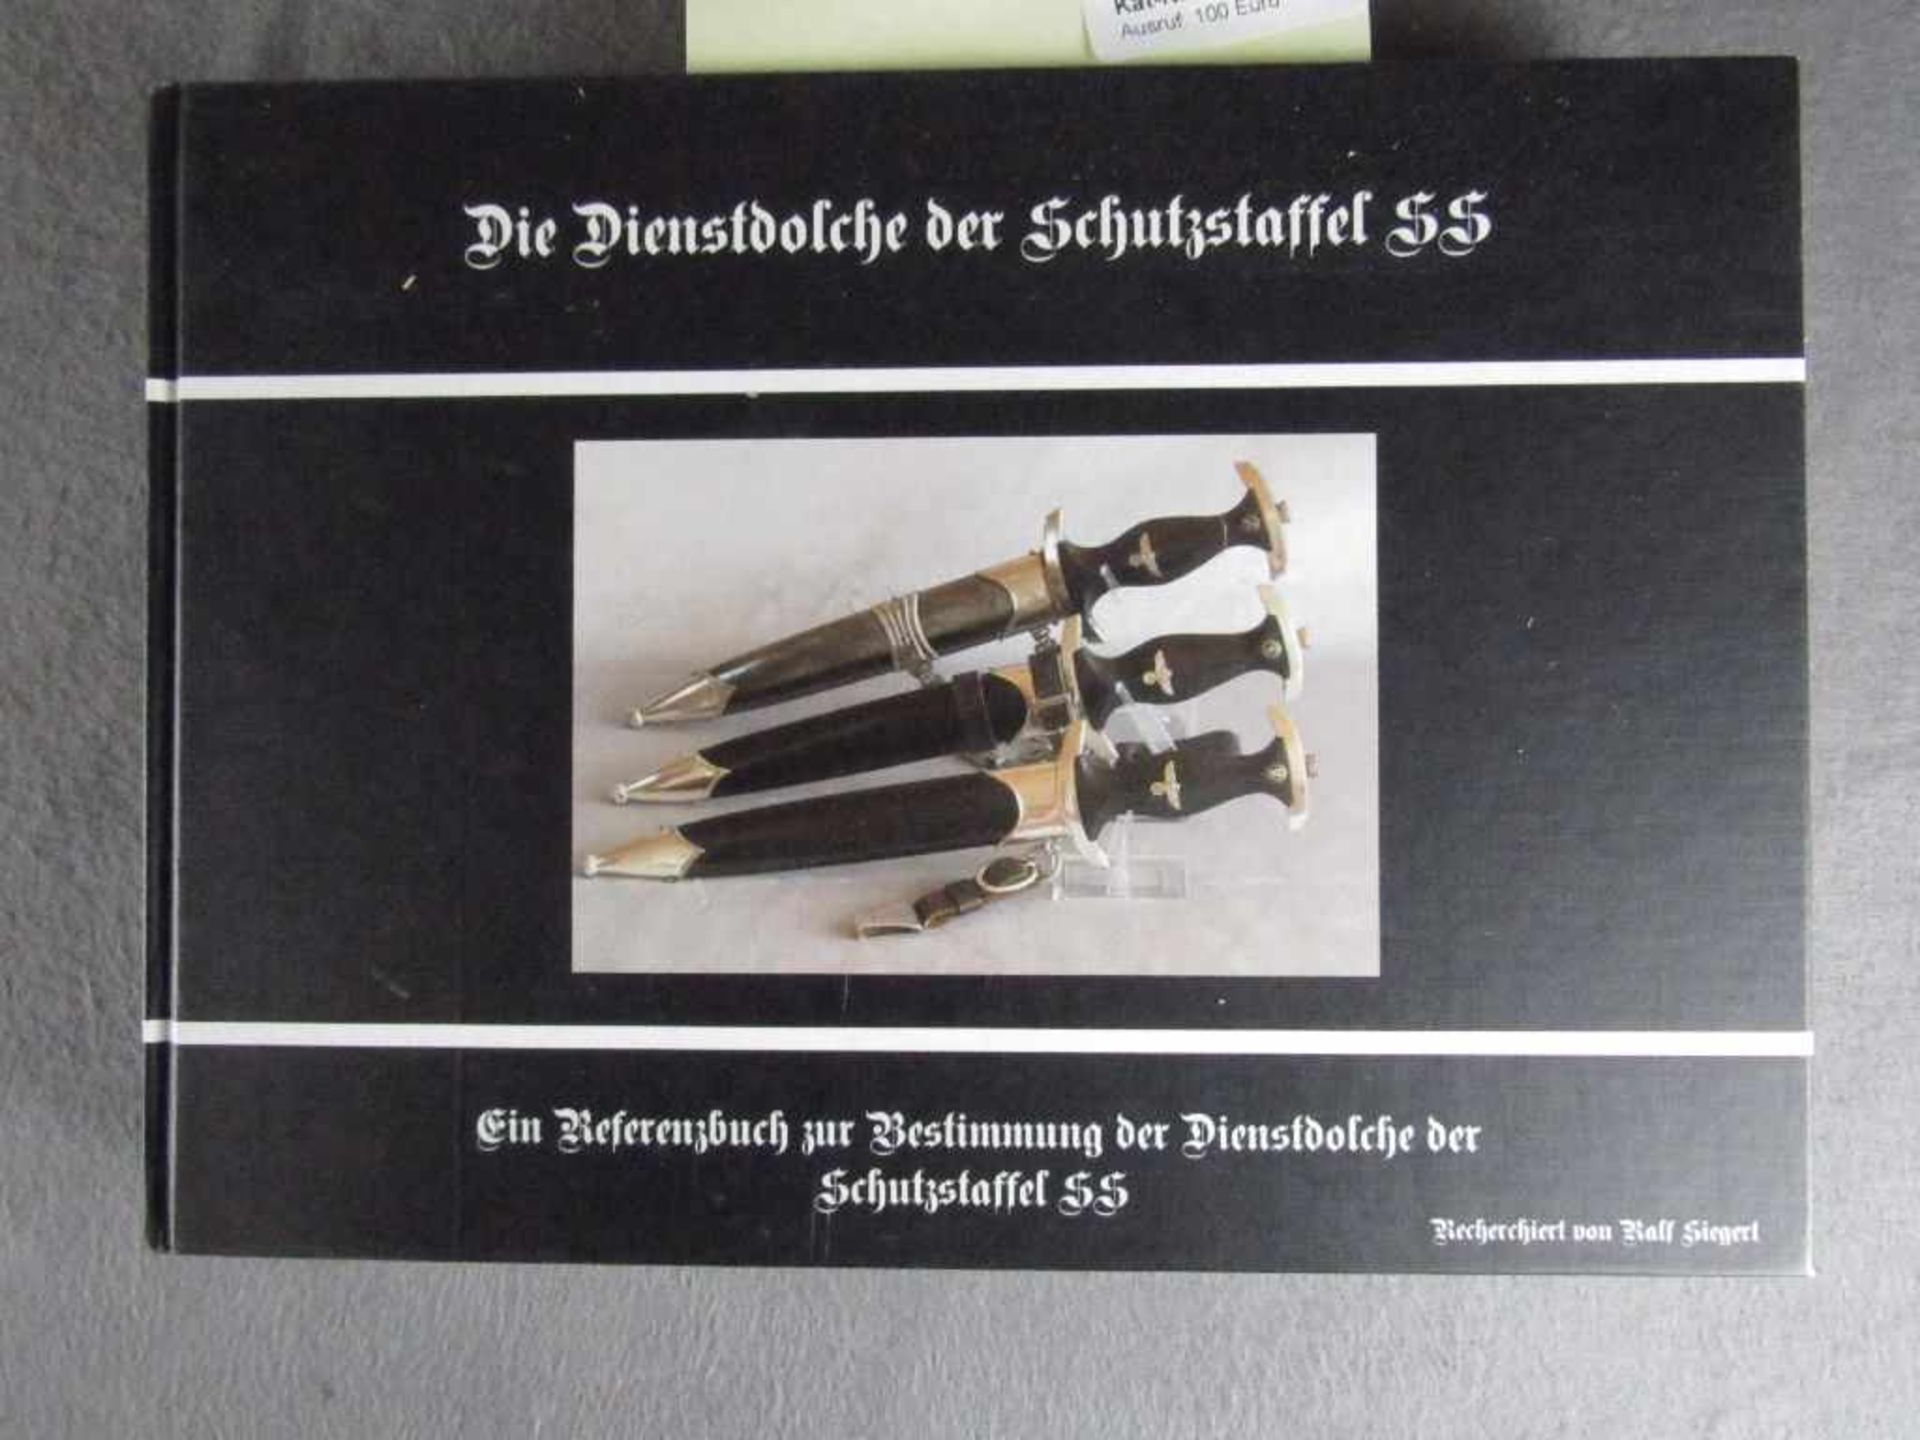 Sehr seltenes Buch Referenzbuch zur Bestimmung der Dienstdolche für SS ein Muss für jeden Sammler<b